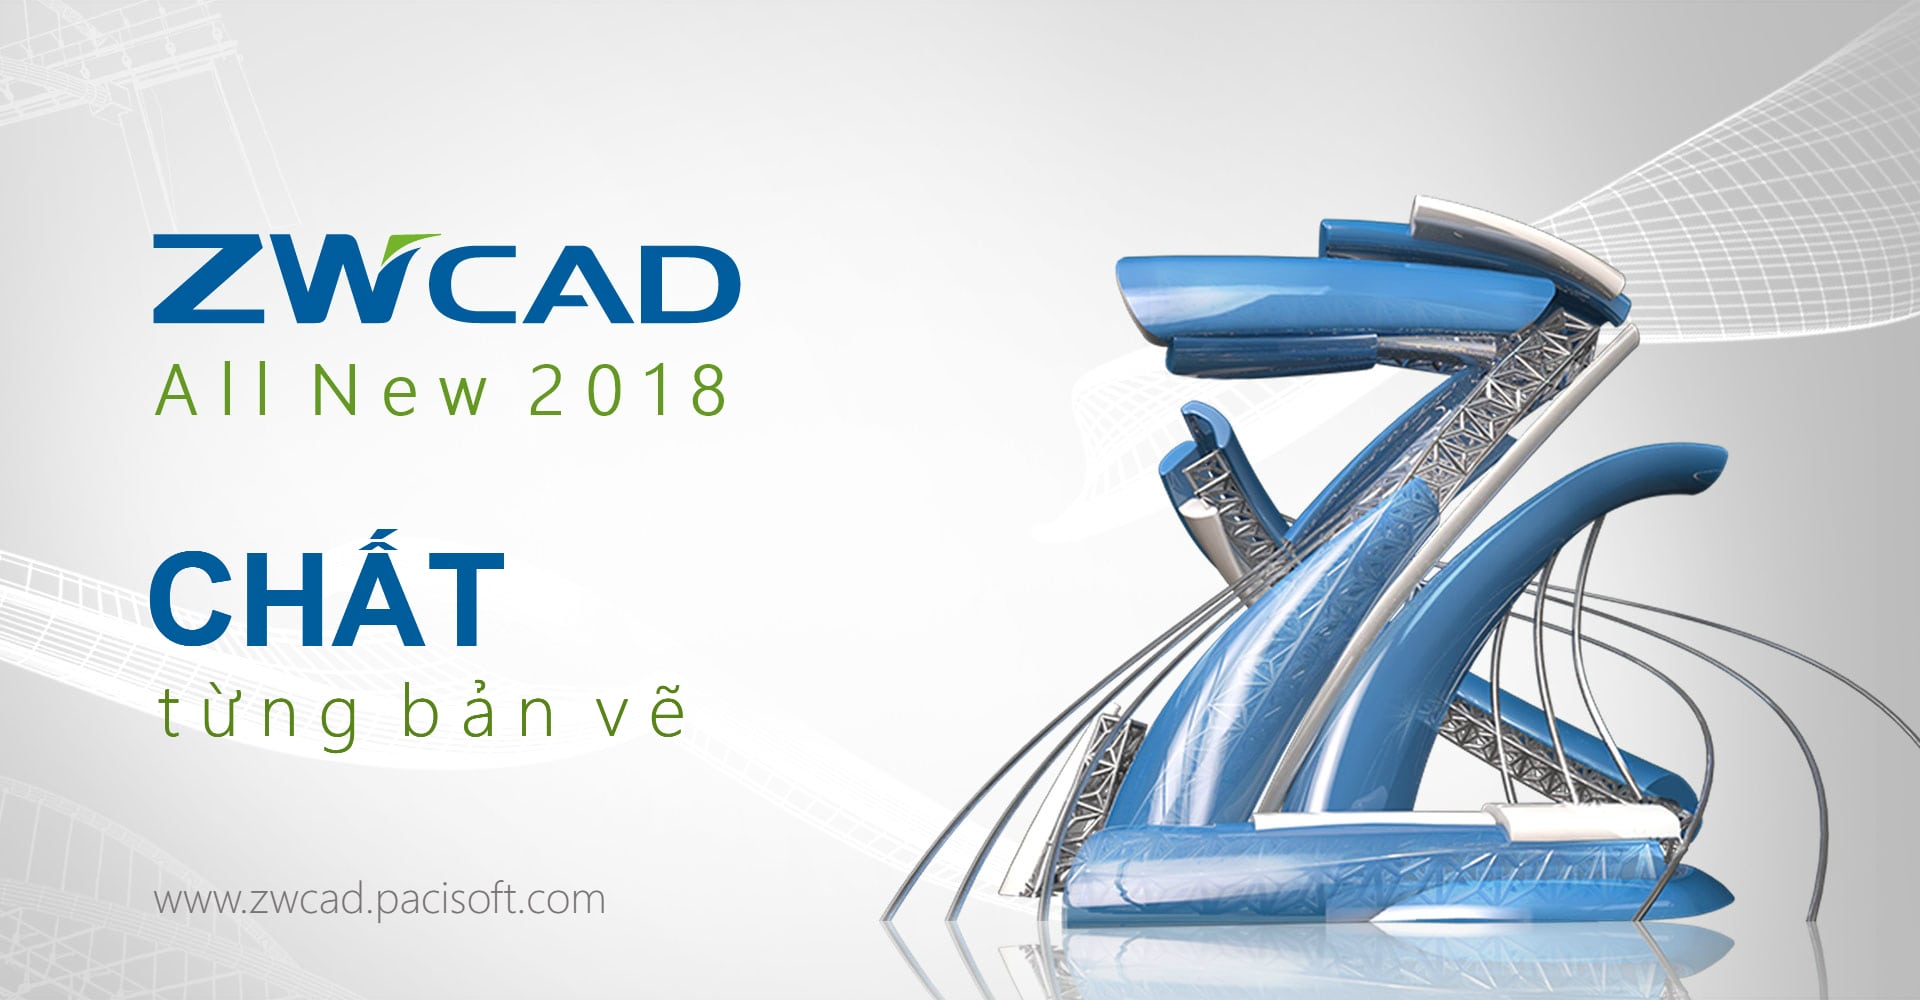 THƯ MỜI: PACISOFT & ZWCAD 2018 sẽ tham gia Vietbuild 2017 (Hochiminh) vào 27/09 - 01/10